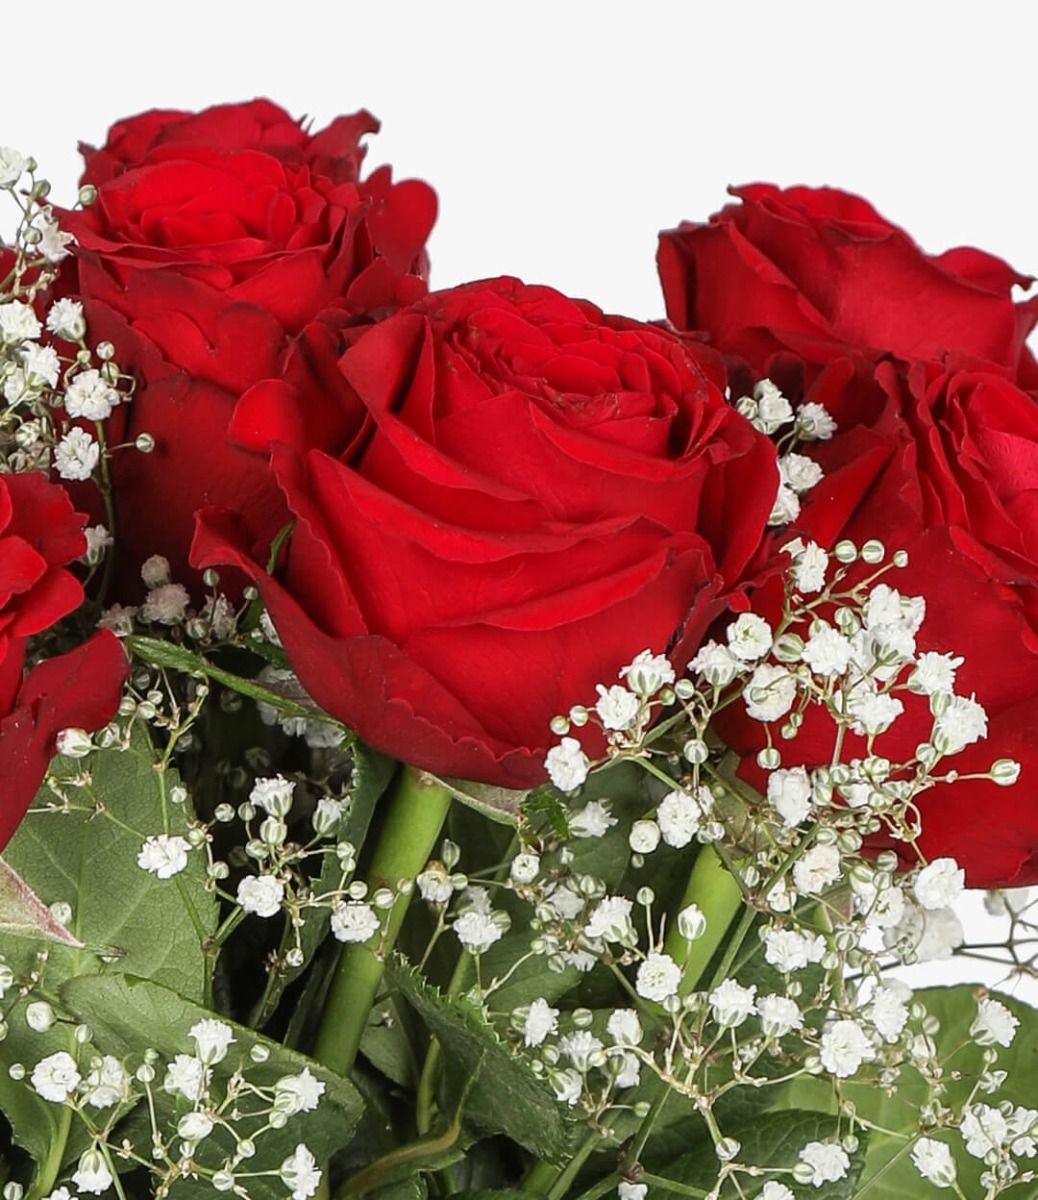 صورة وردة حمراء استمتع باجمل صور الورد الاحمر عجيب وغريب